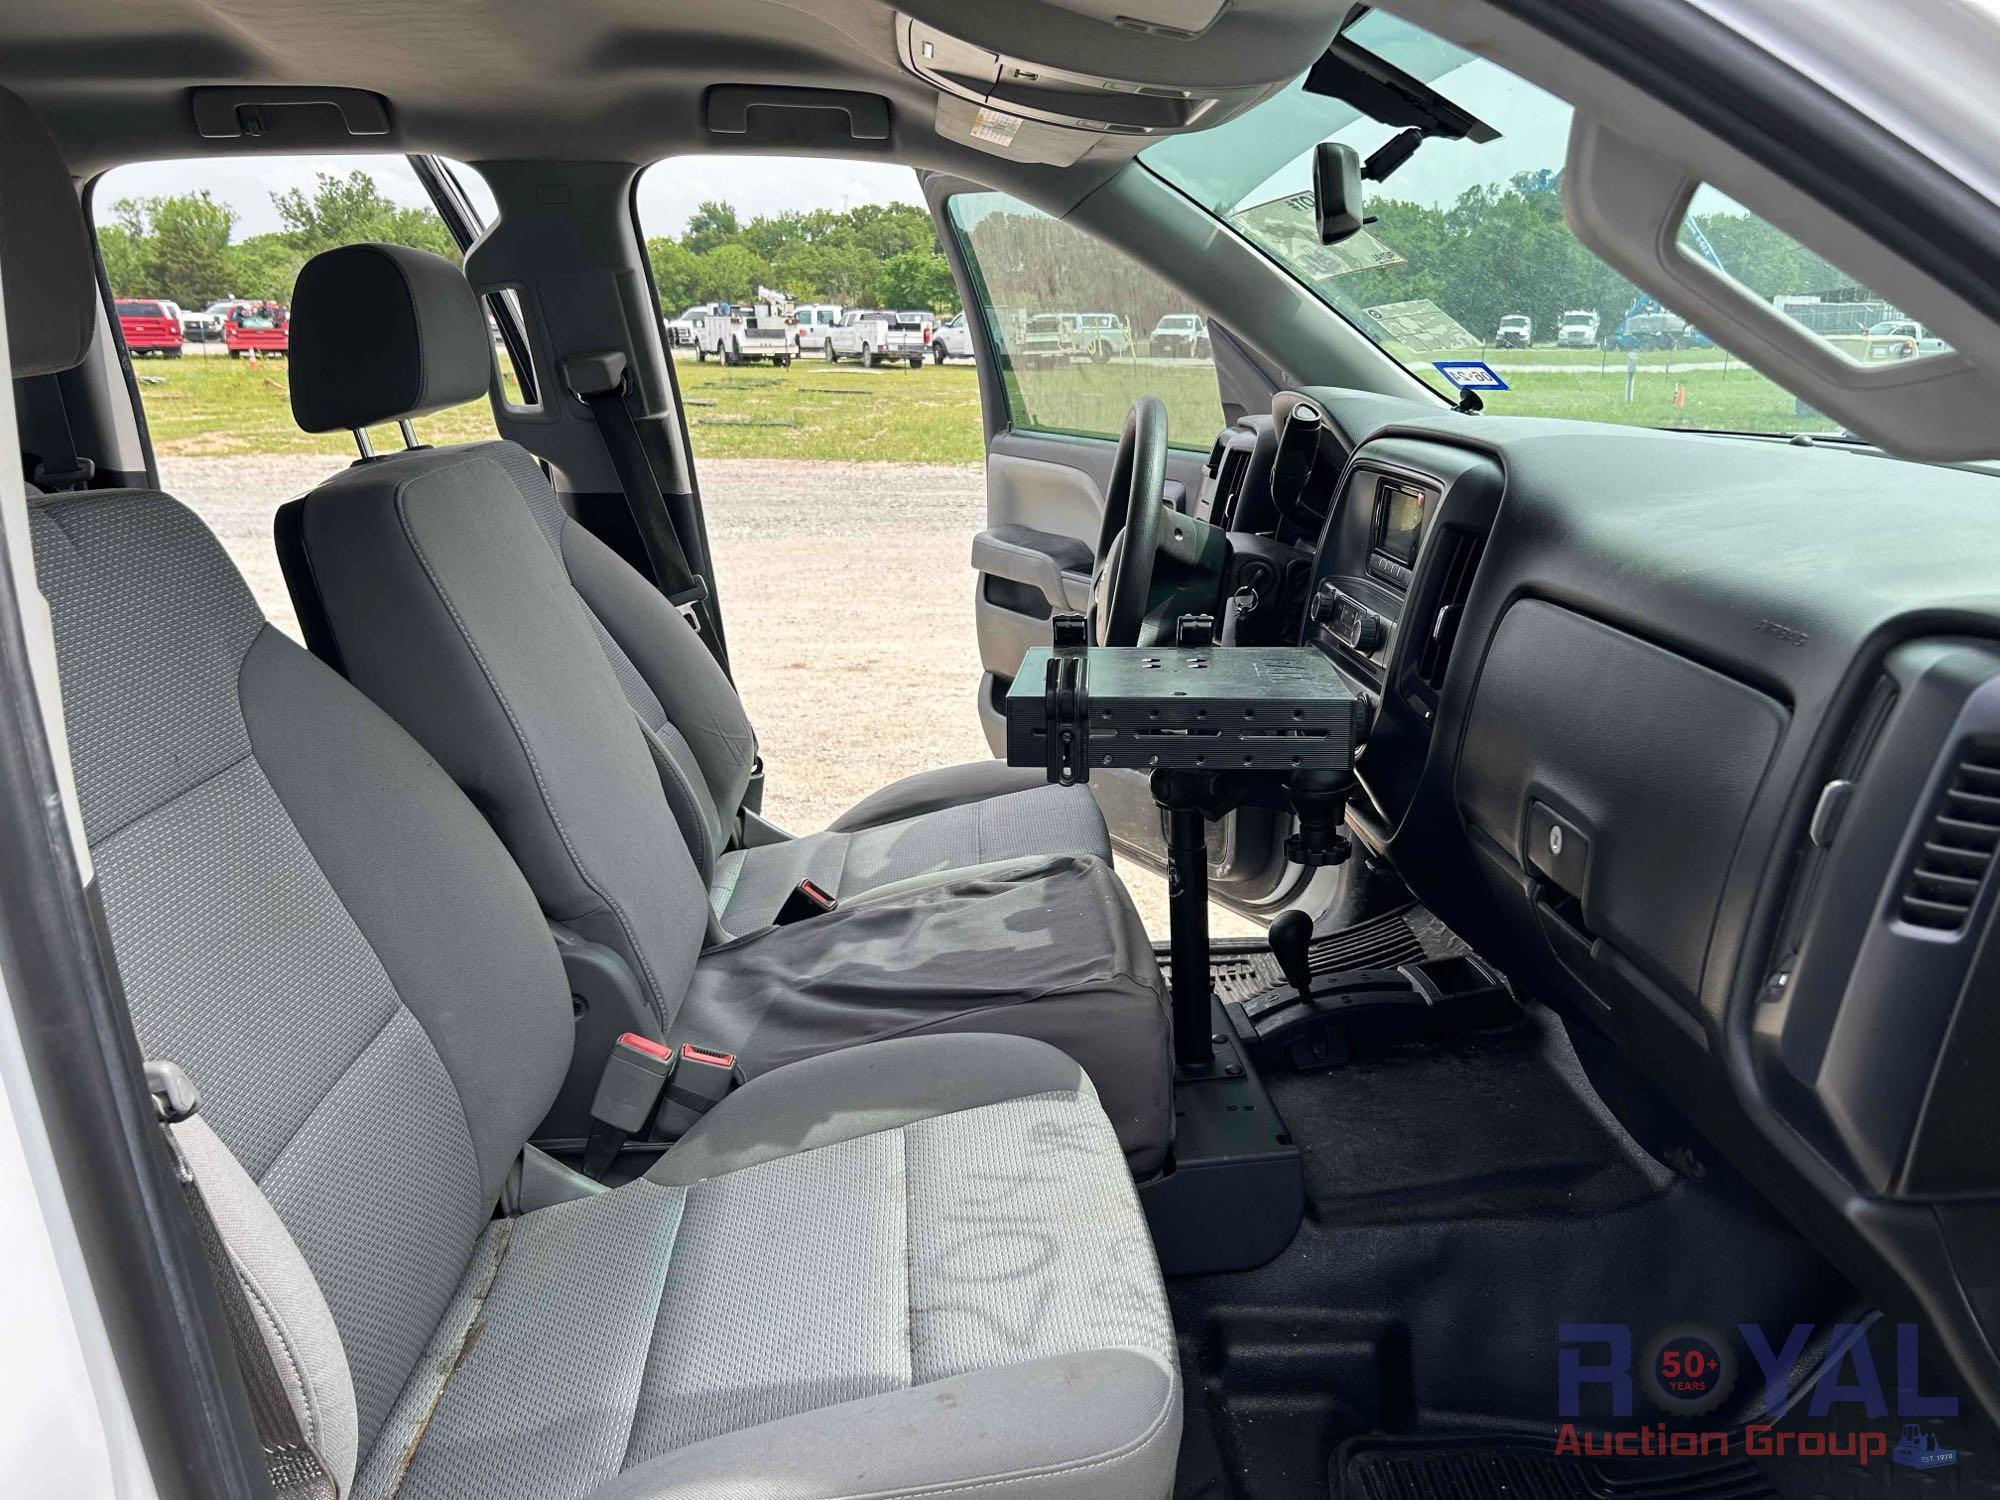 2014 Chevrolet Silverado 4x4 Double Cab Pickup Truck